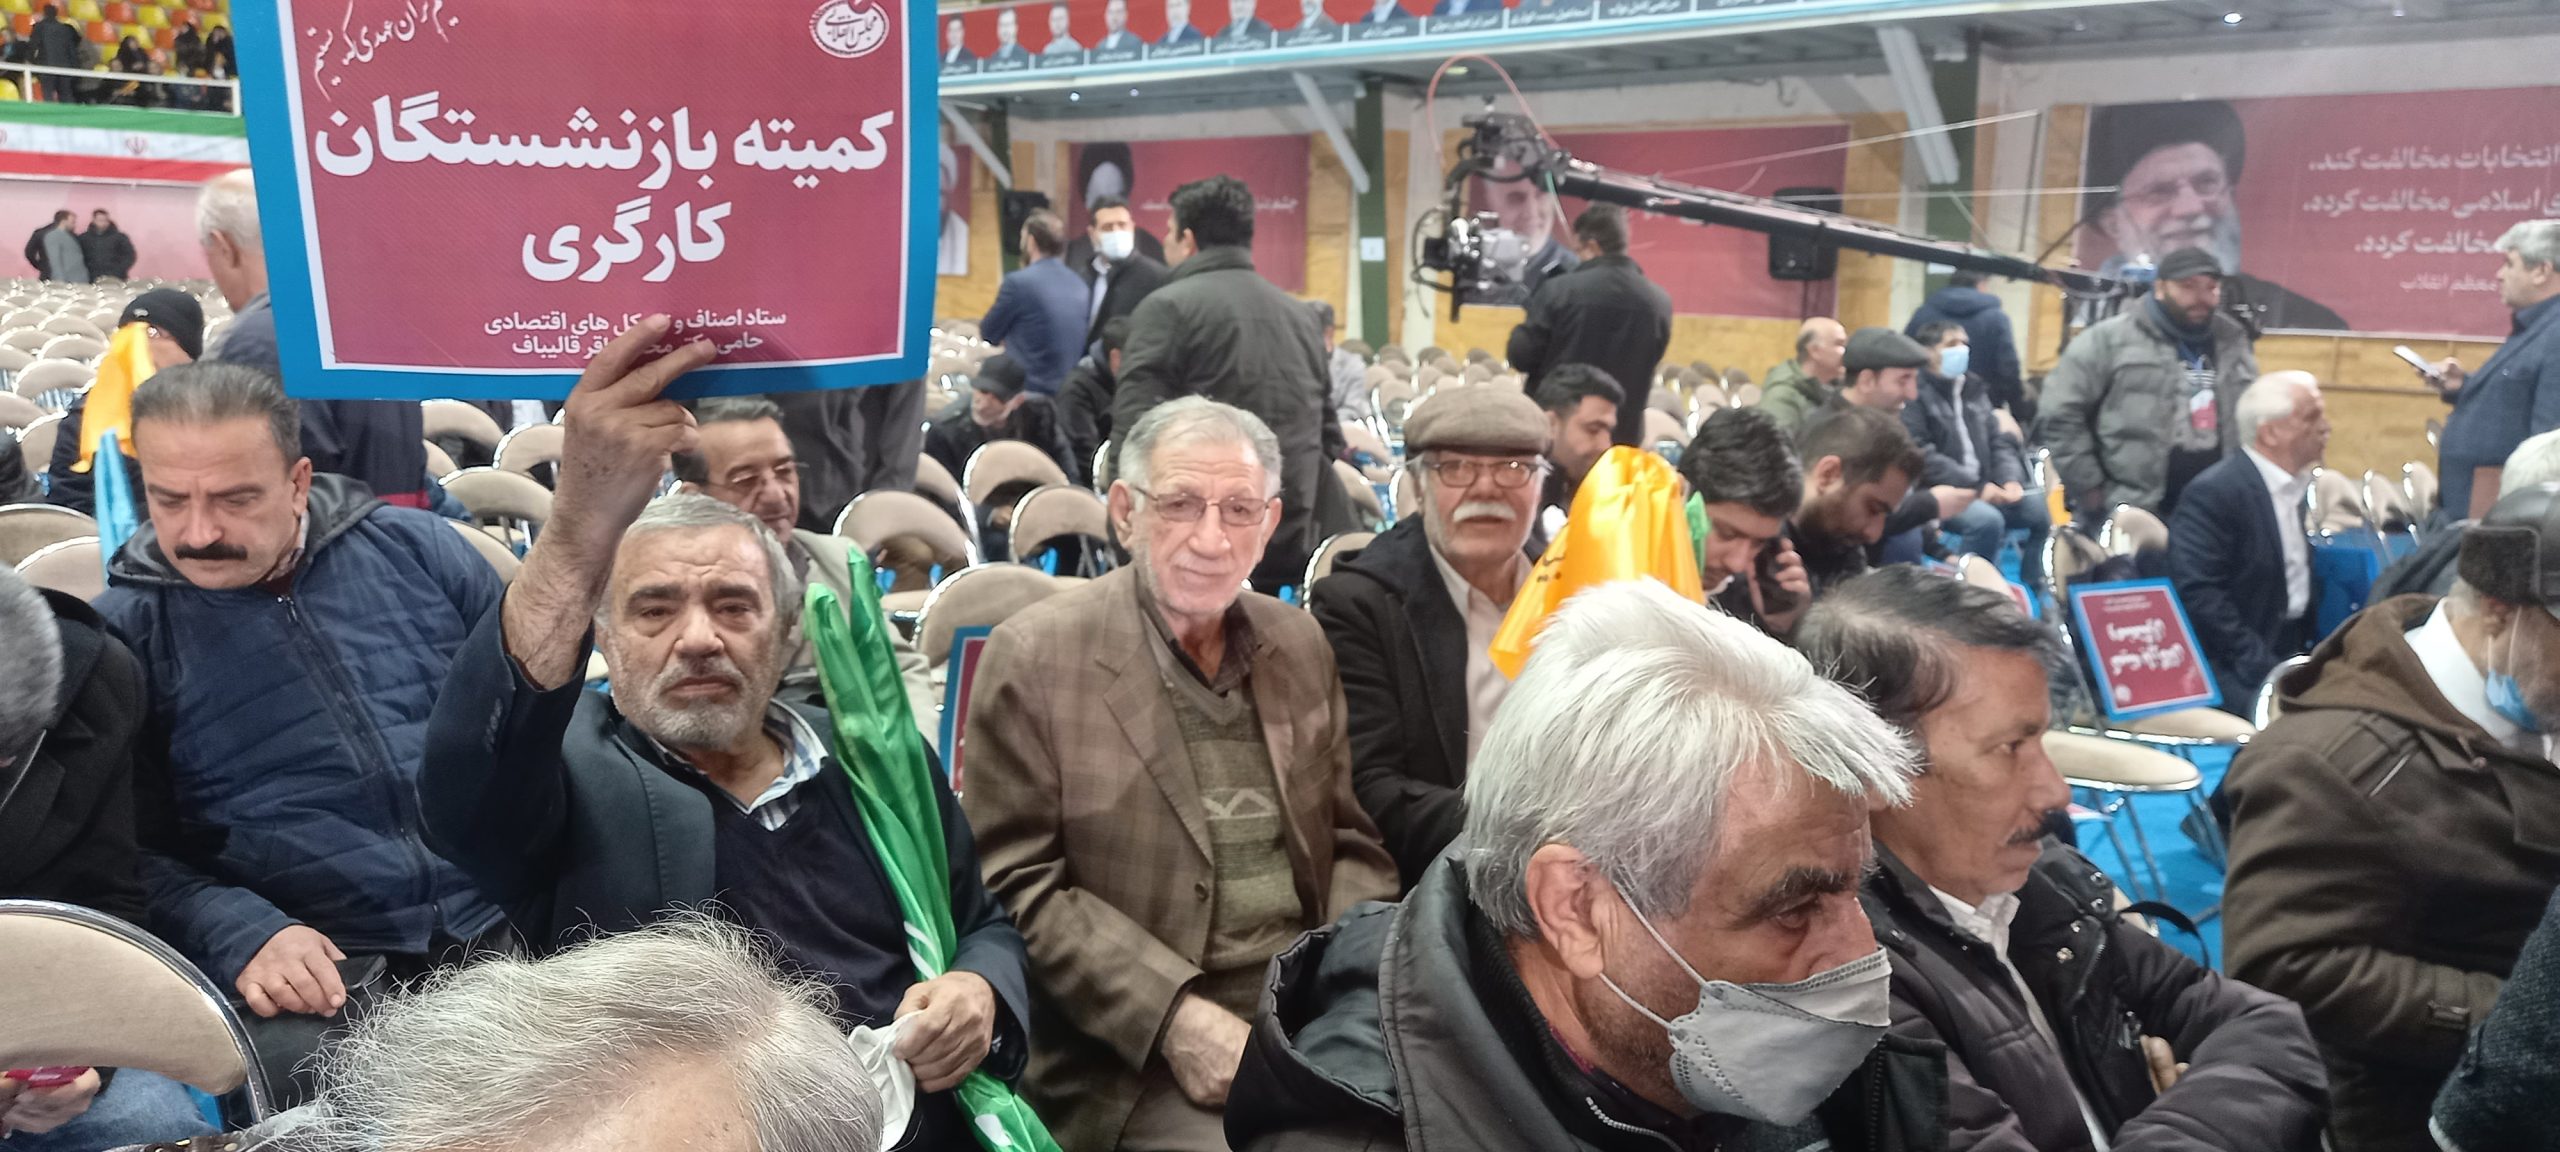 حضور پرتعداد و فعال کمیته بازنشستگان تامین اجتماعی در همایش انتخاباتی محمد باقر قالیباف